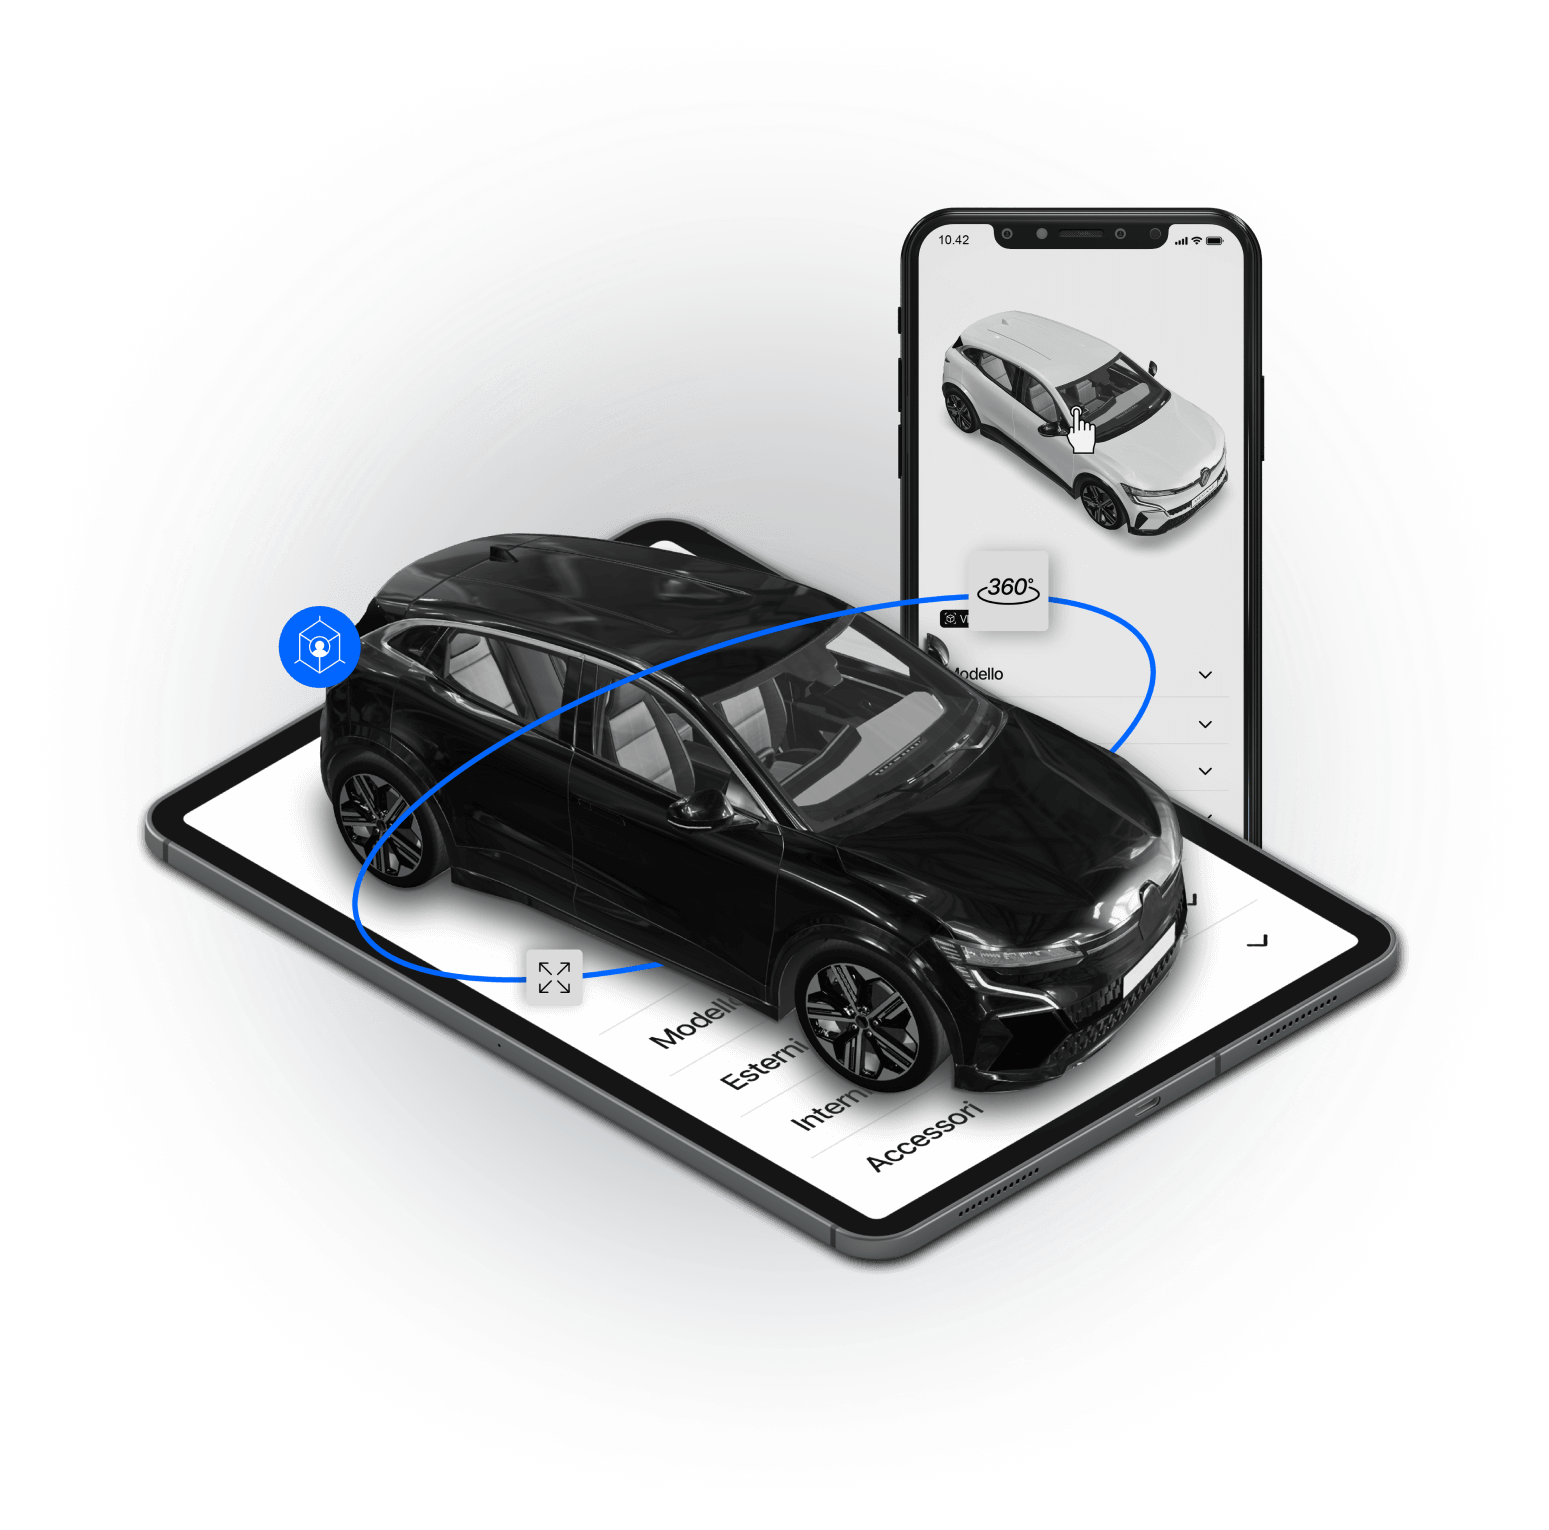 Immagine rappresentativa di Configuratore 3D per automotive: automobile presentata sopra schermo smartphone per mostrare resa finale più vera del reale